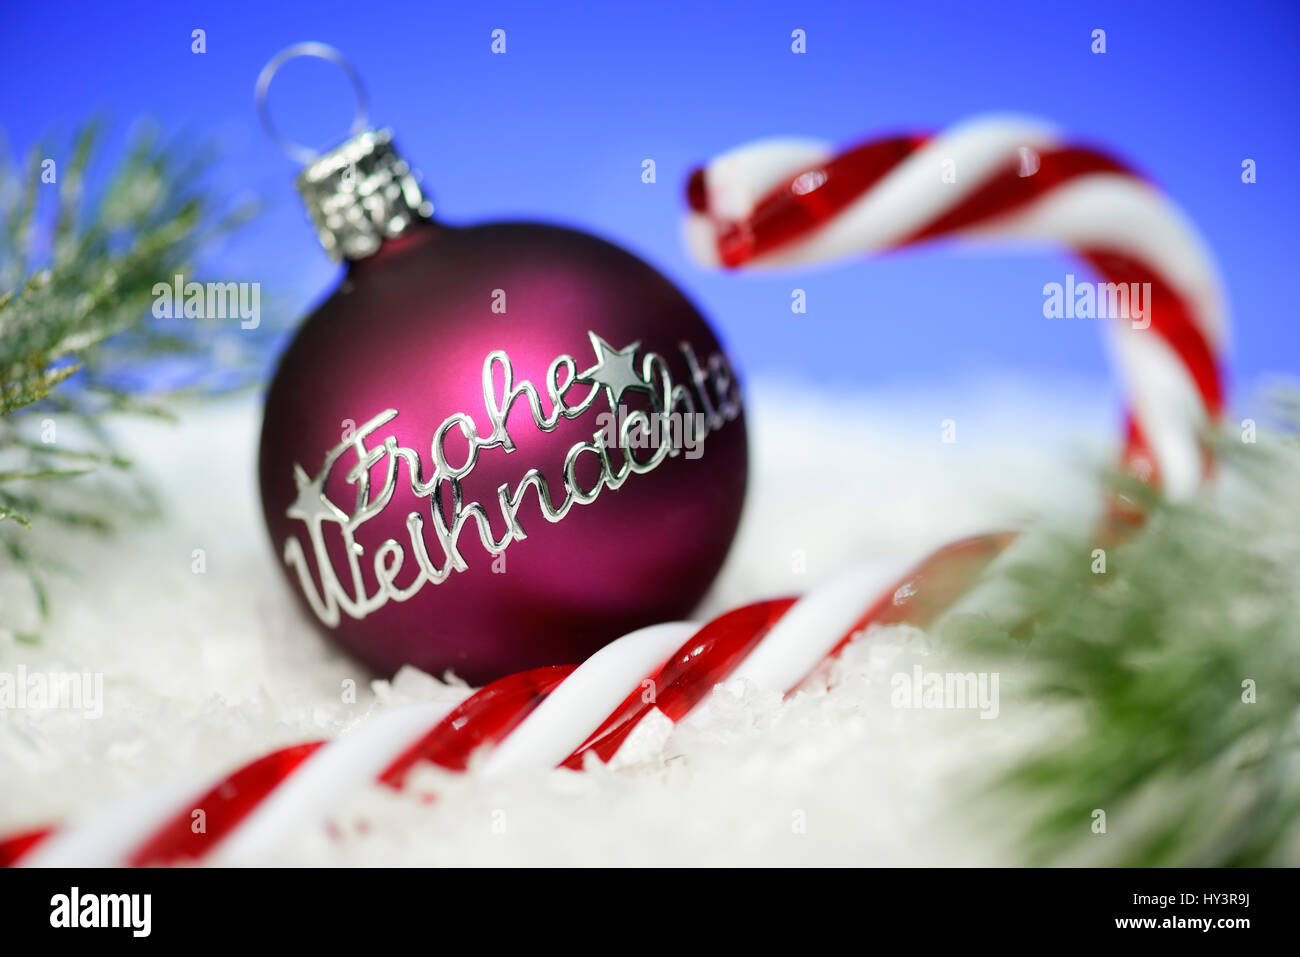 Christmas ball with label glad Christmas and stick of rock, Christmas, Weihnachtskugel mit Aufschrift Frohe Weihnachten und Zuckerstange, Weihnachten Stock Photo